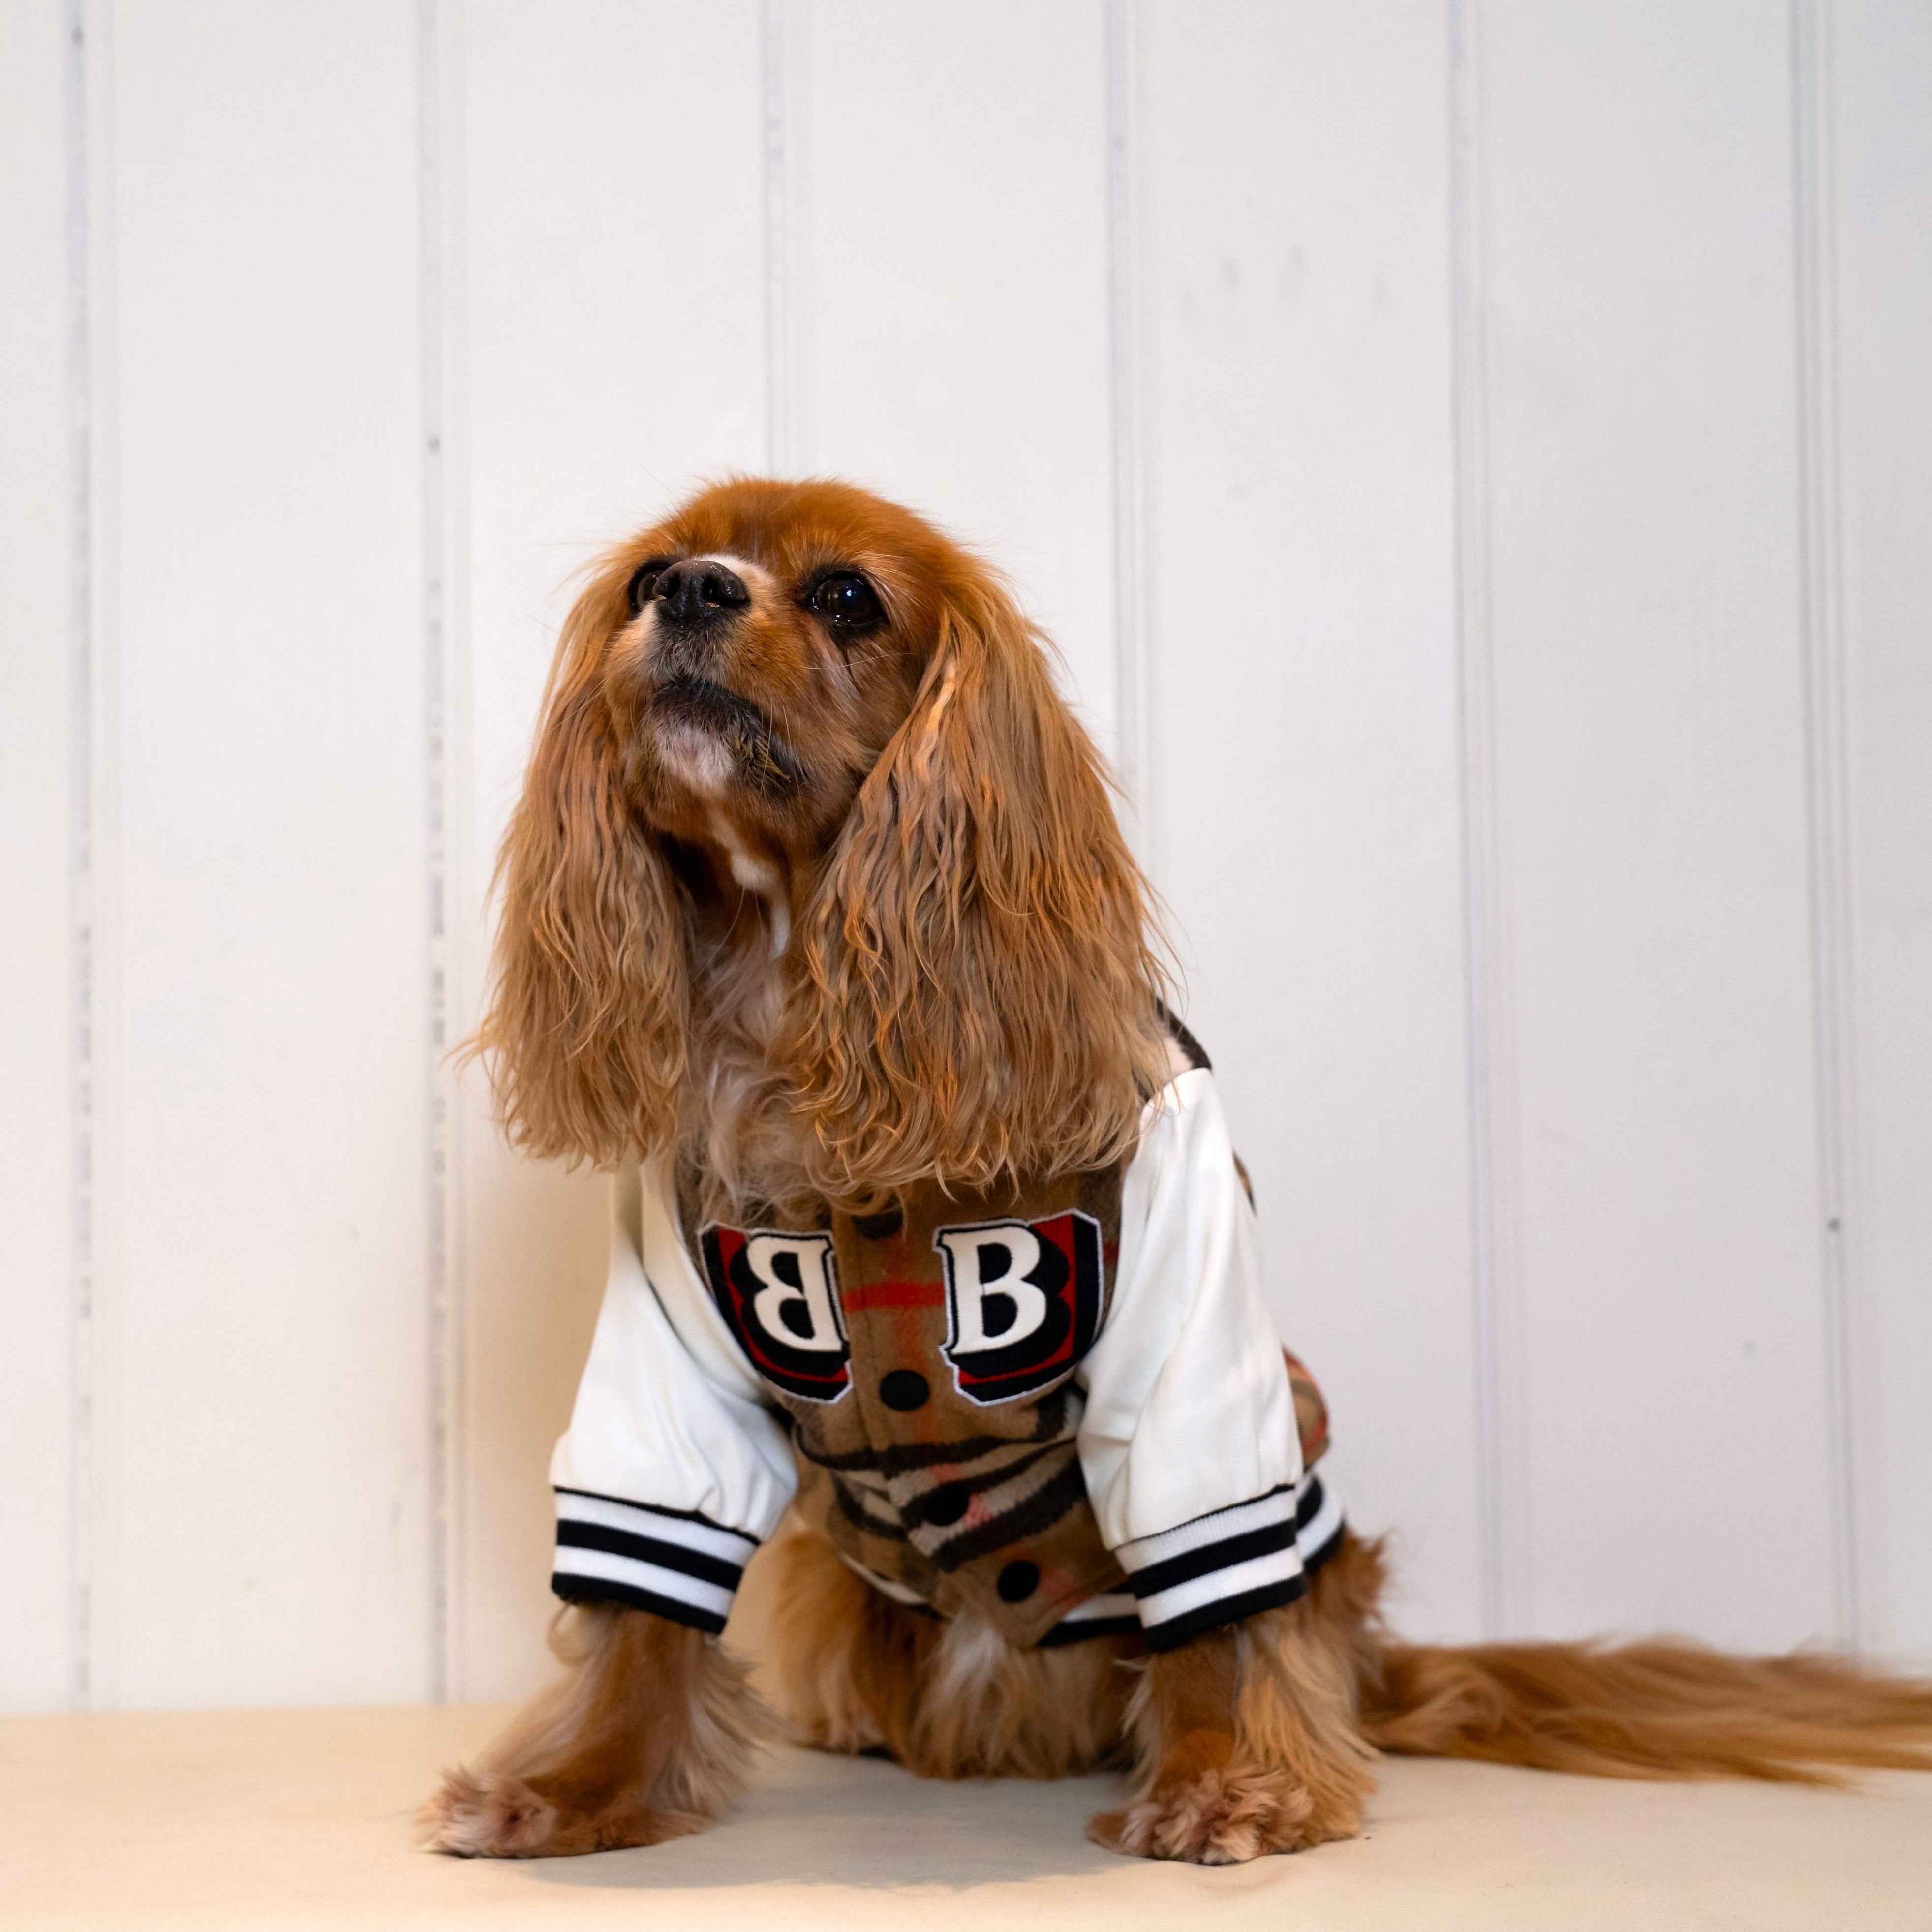 Baseball Star Leather Dog Jacket Coat